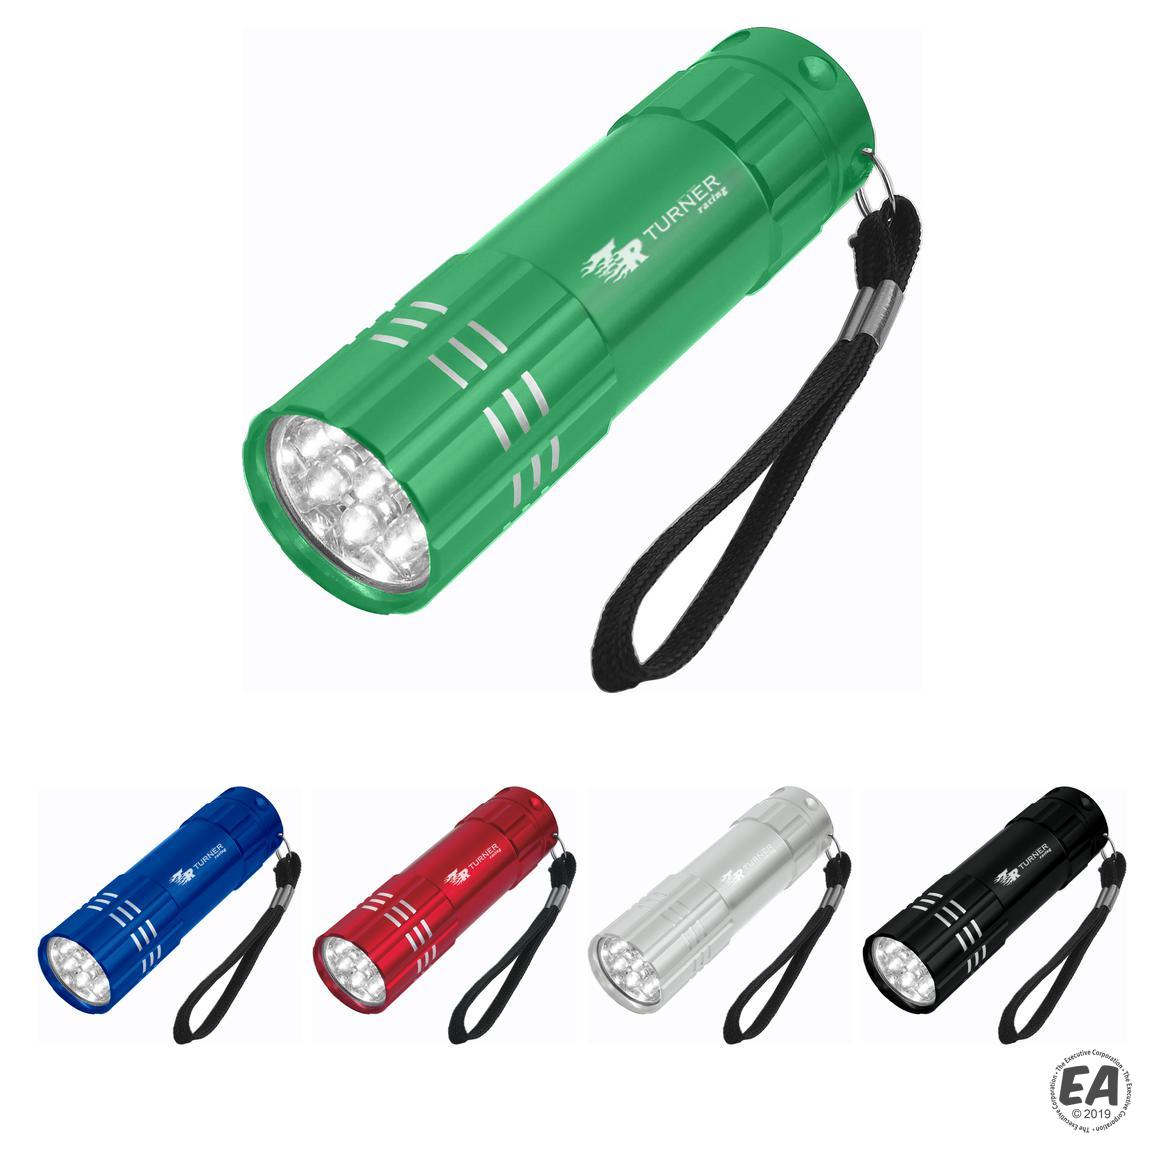 Promotional Aluminum Led Flashlight With Strap | Branded LED ...